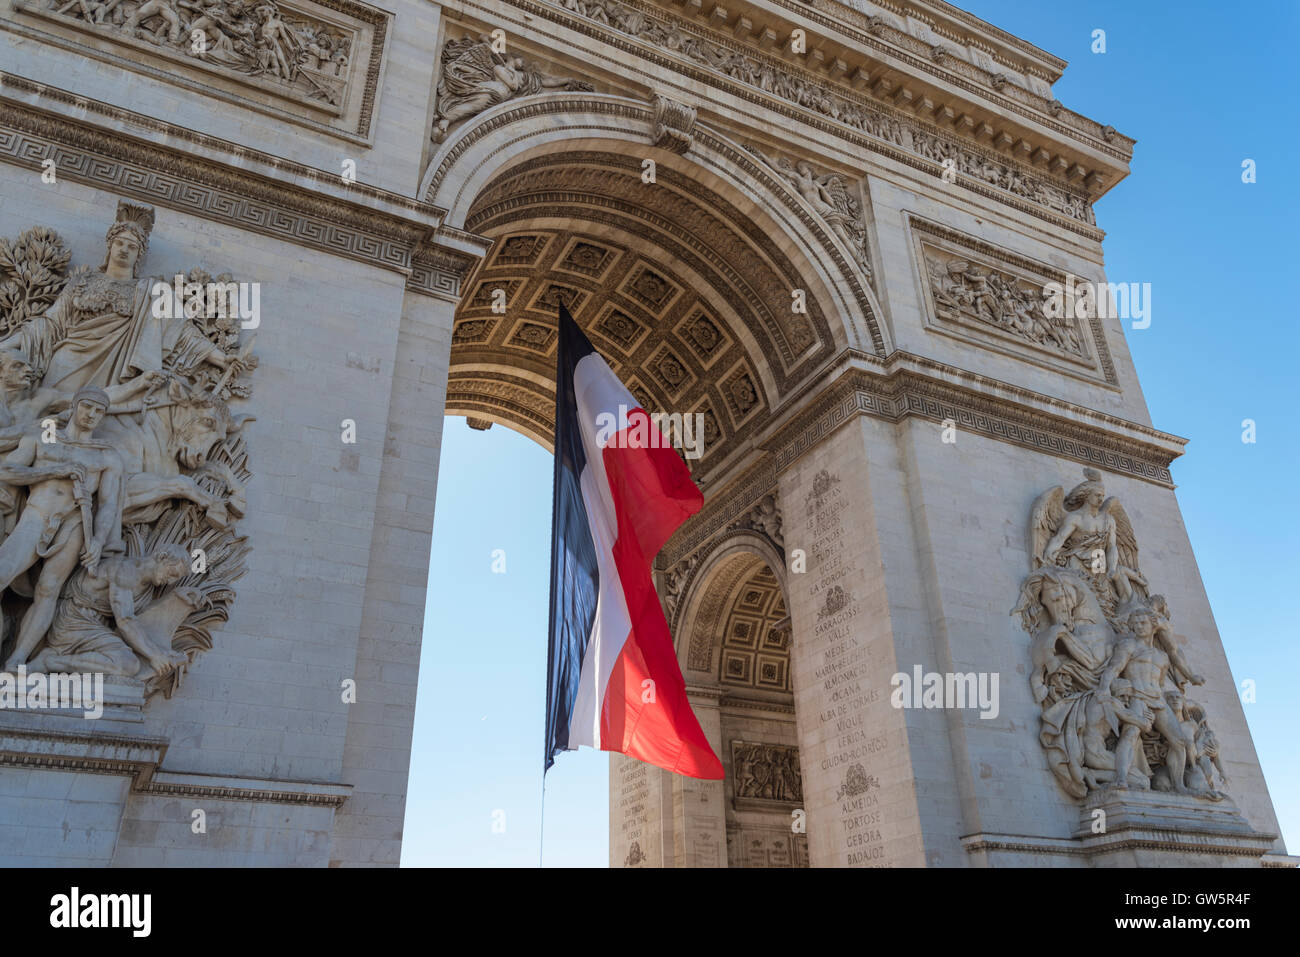 Arc de Triomphe de l'Étoile at Place Charles de Gaulle, Paris, France Stock Photo